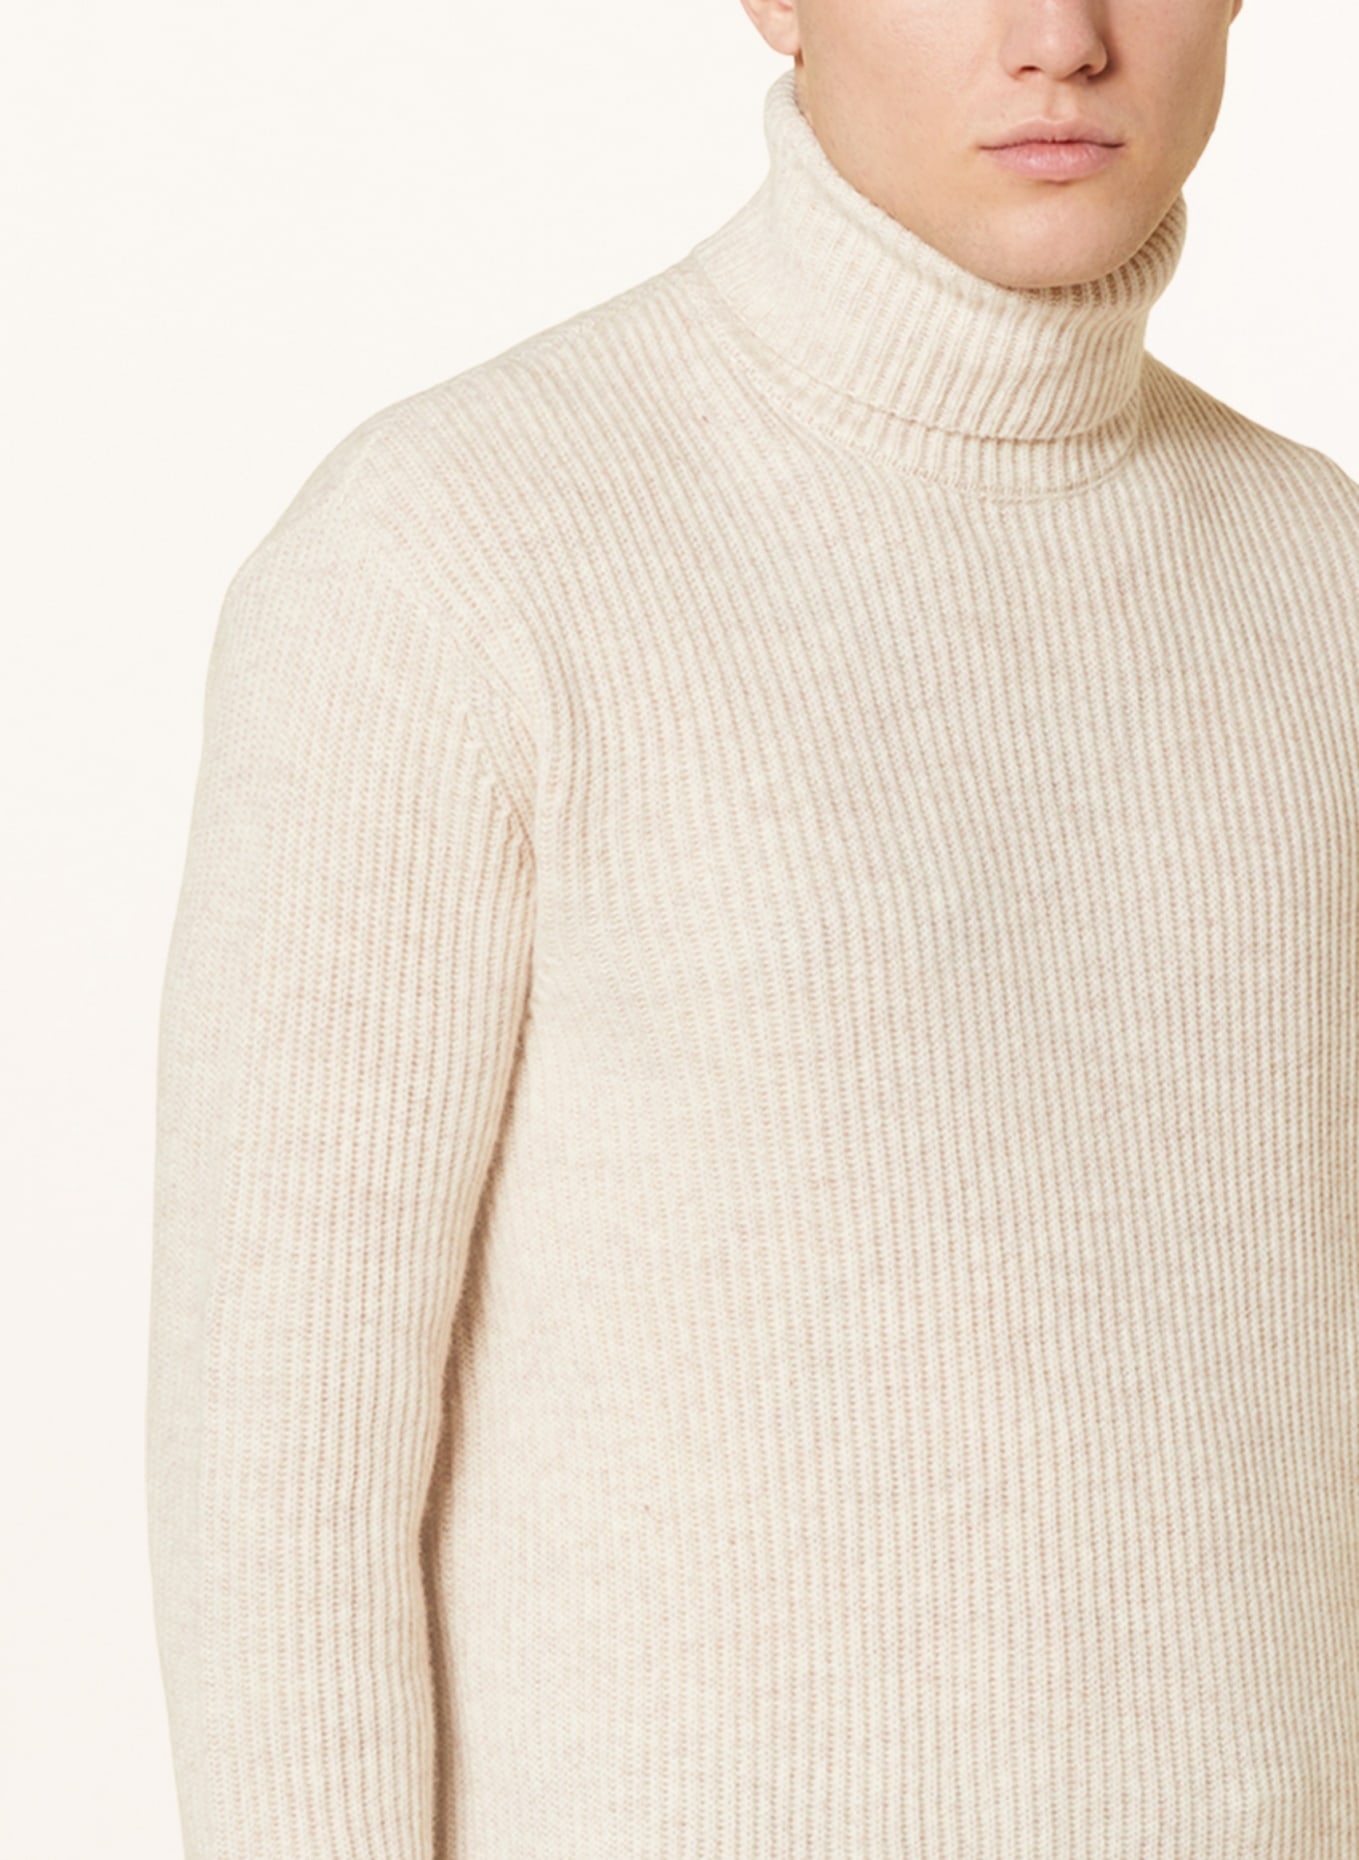 LES DEUX Turtleneck sweater EDDIE made of merino wool, Color: BEIGE (Image 4)